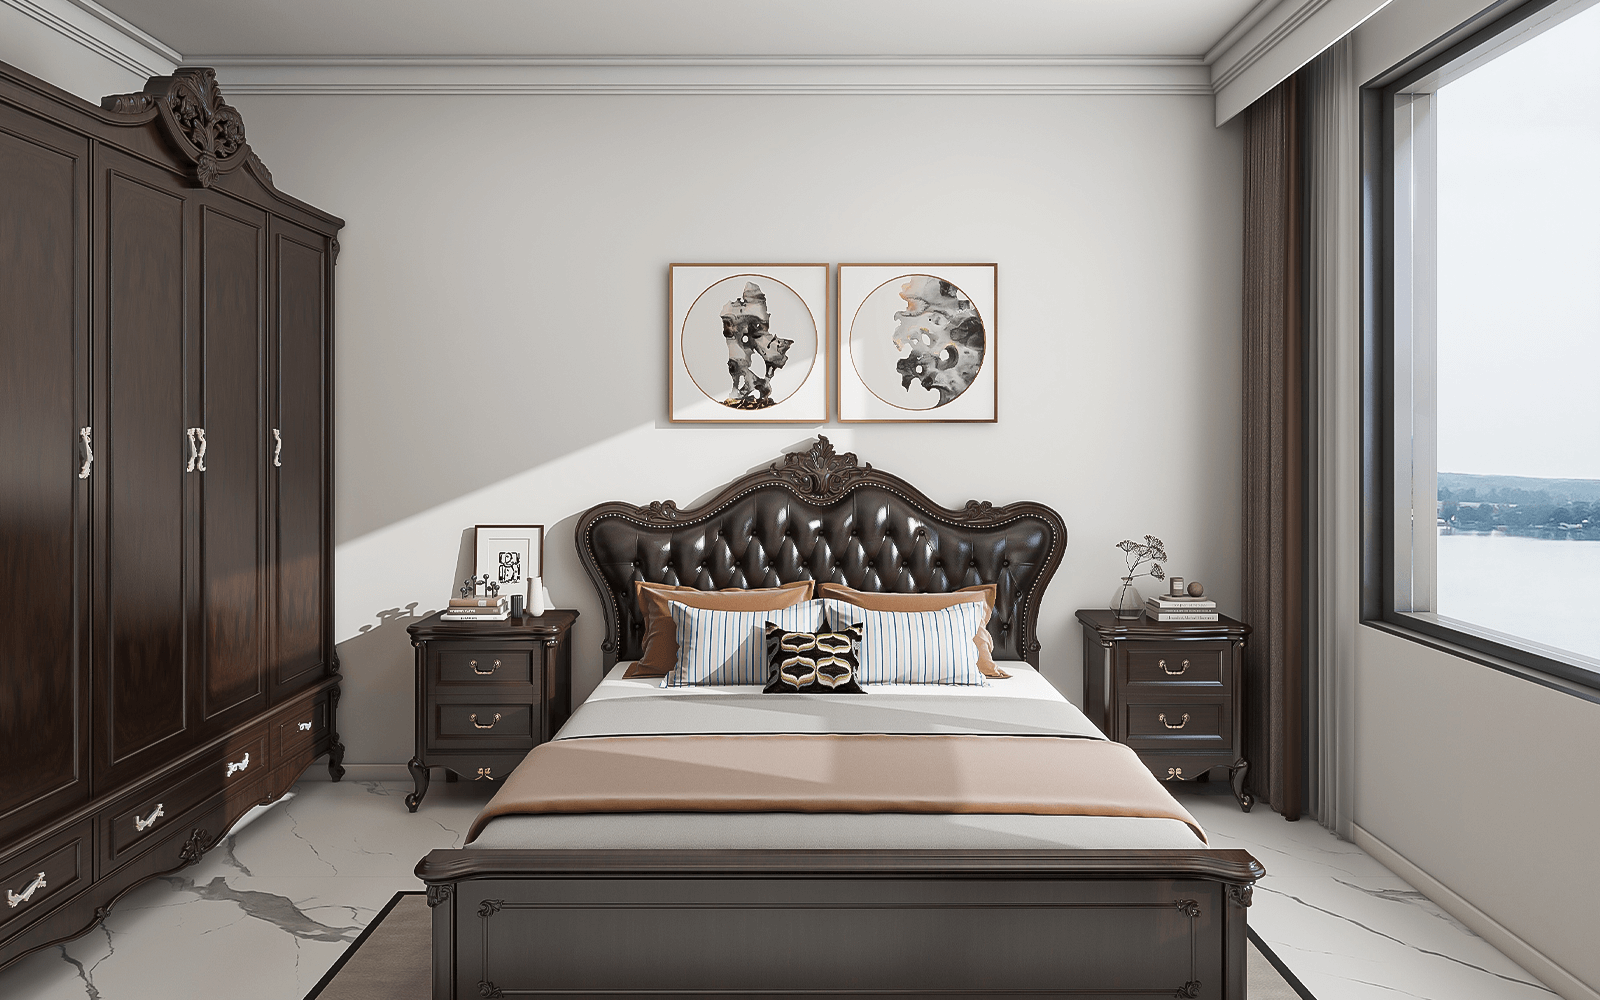 主卧的床和衣柜都也是黑橡木色，与客餐厅的家居统一颜色，更加符合装修整体风格的氛围。床的两侧都有三层抽屉的床头柜，对称摆放，和谐自然。床头挂画则用了奇石特写，依然遵循了中式的对称原则。